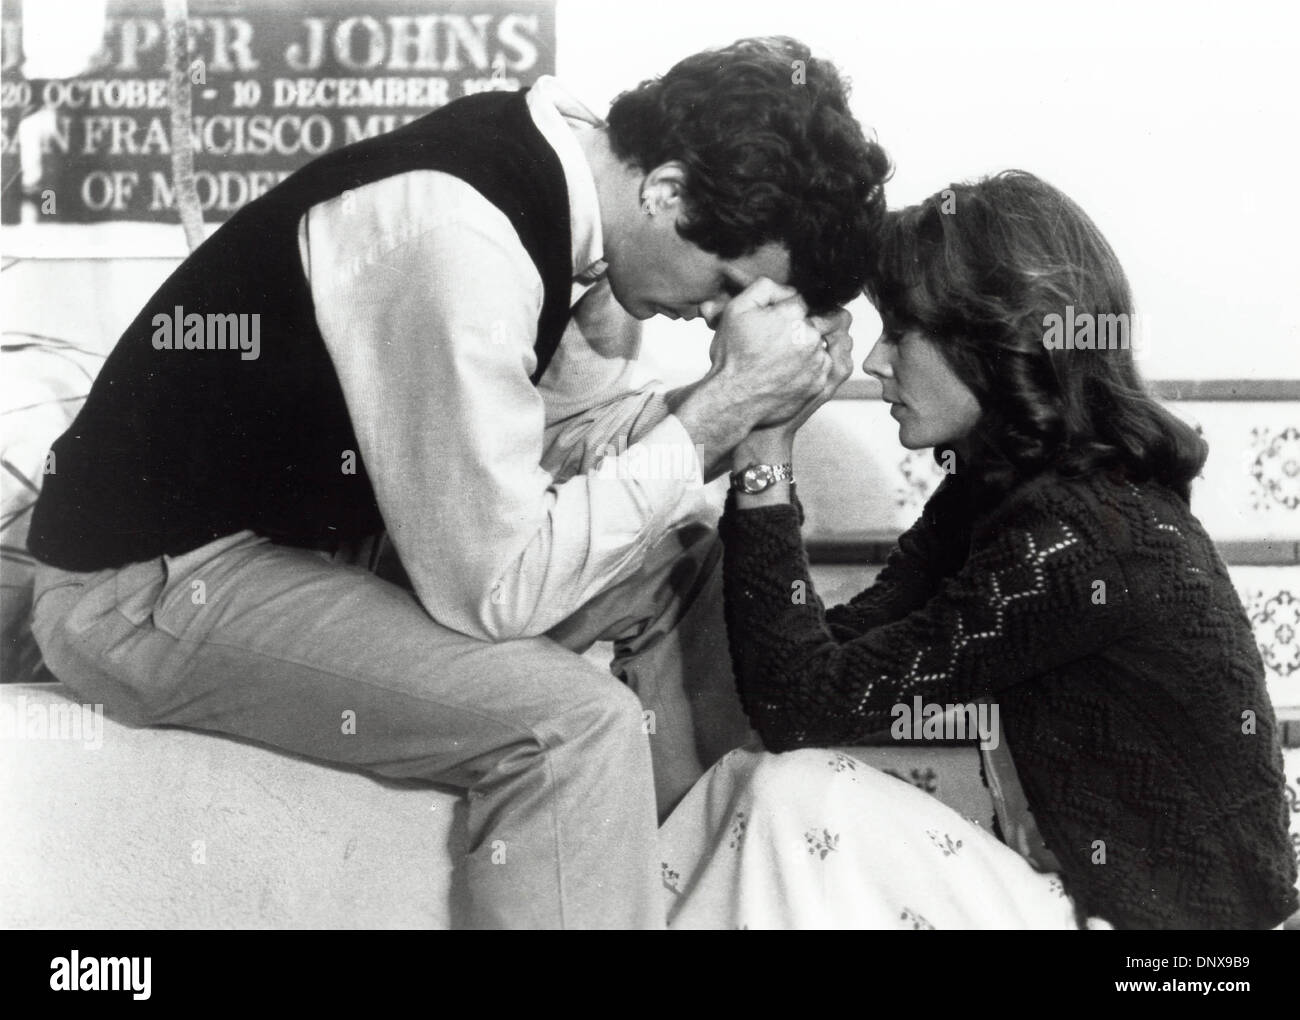 2 luglio 1983 - Kate Jackson Michael Ontkean.Fare l'amore 1983.fornito da foto, inc.(Immagine di credito: © Globo foto/ZUMAPRESS.com) Foto Stock